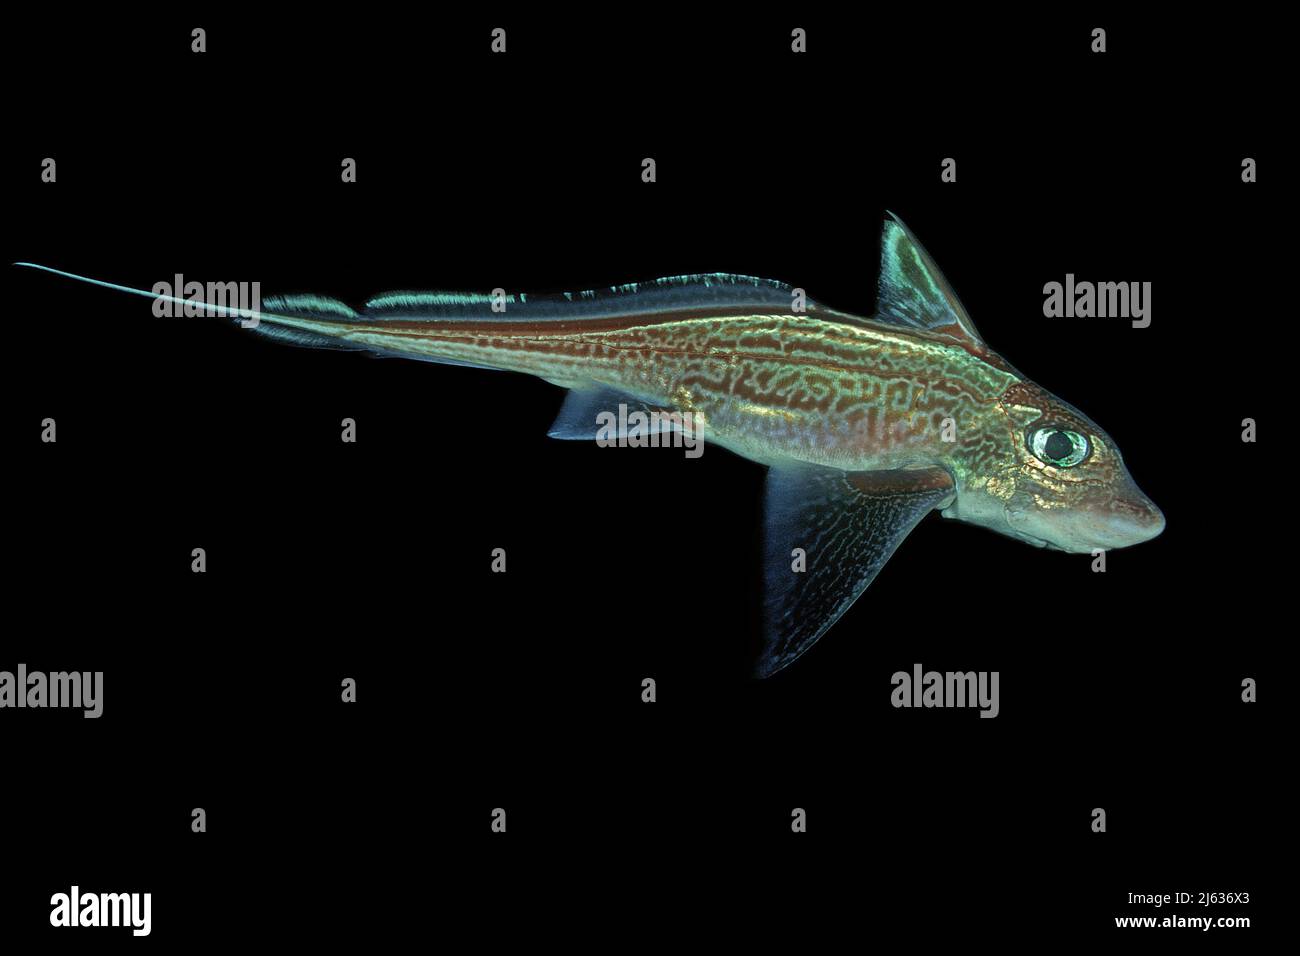 Pesce Coniglio Immagini e Fotos Stock - Alamy